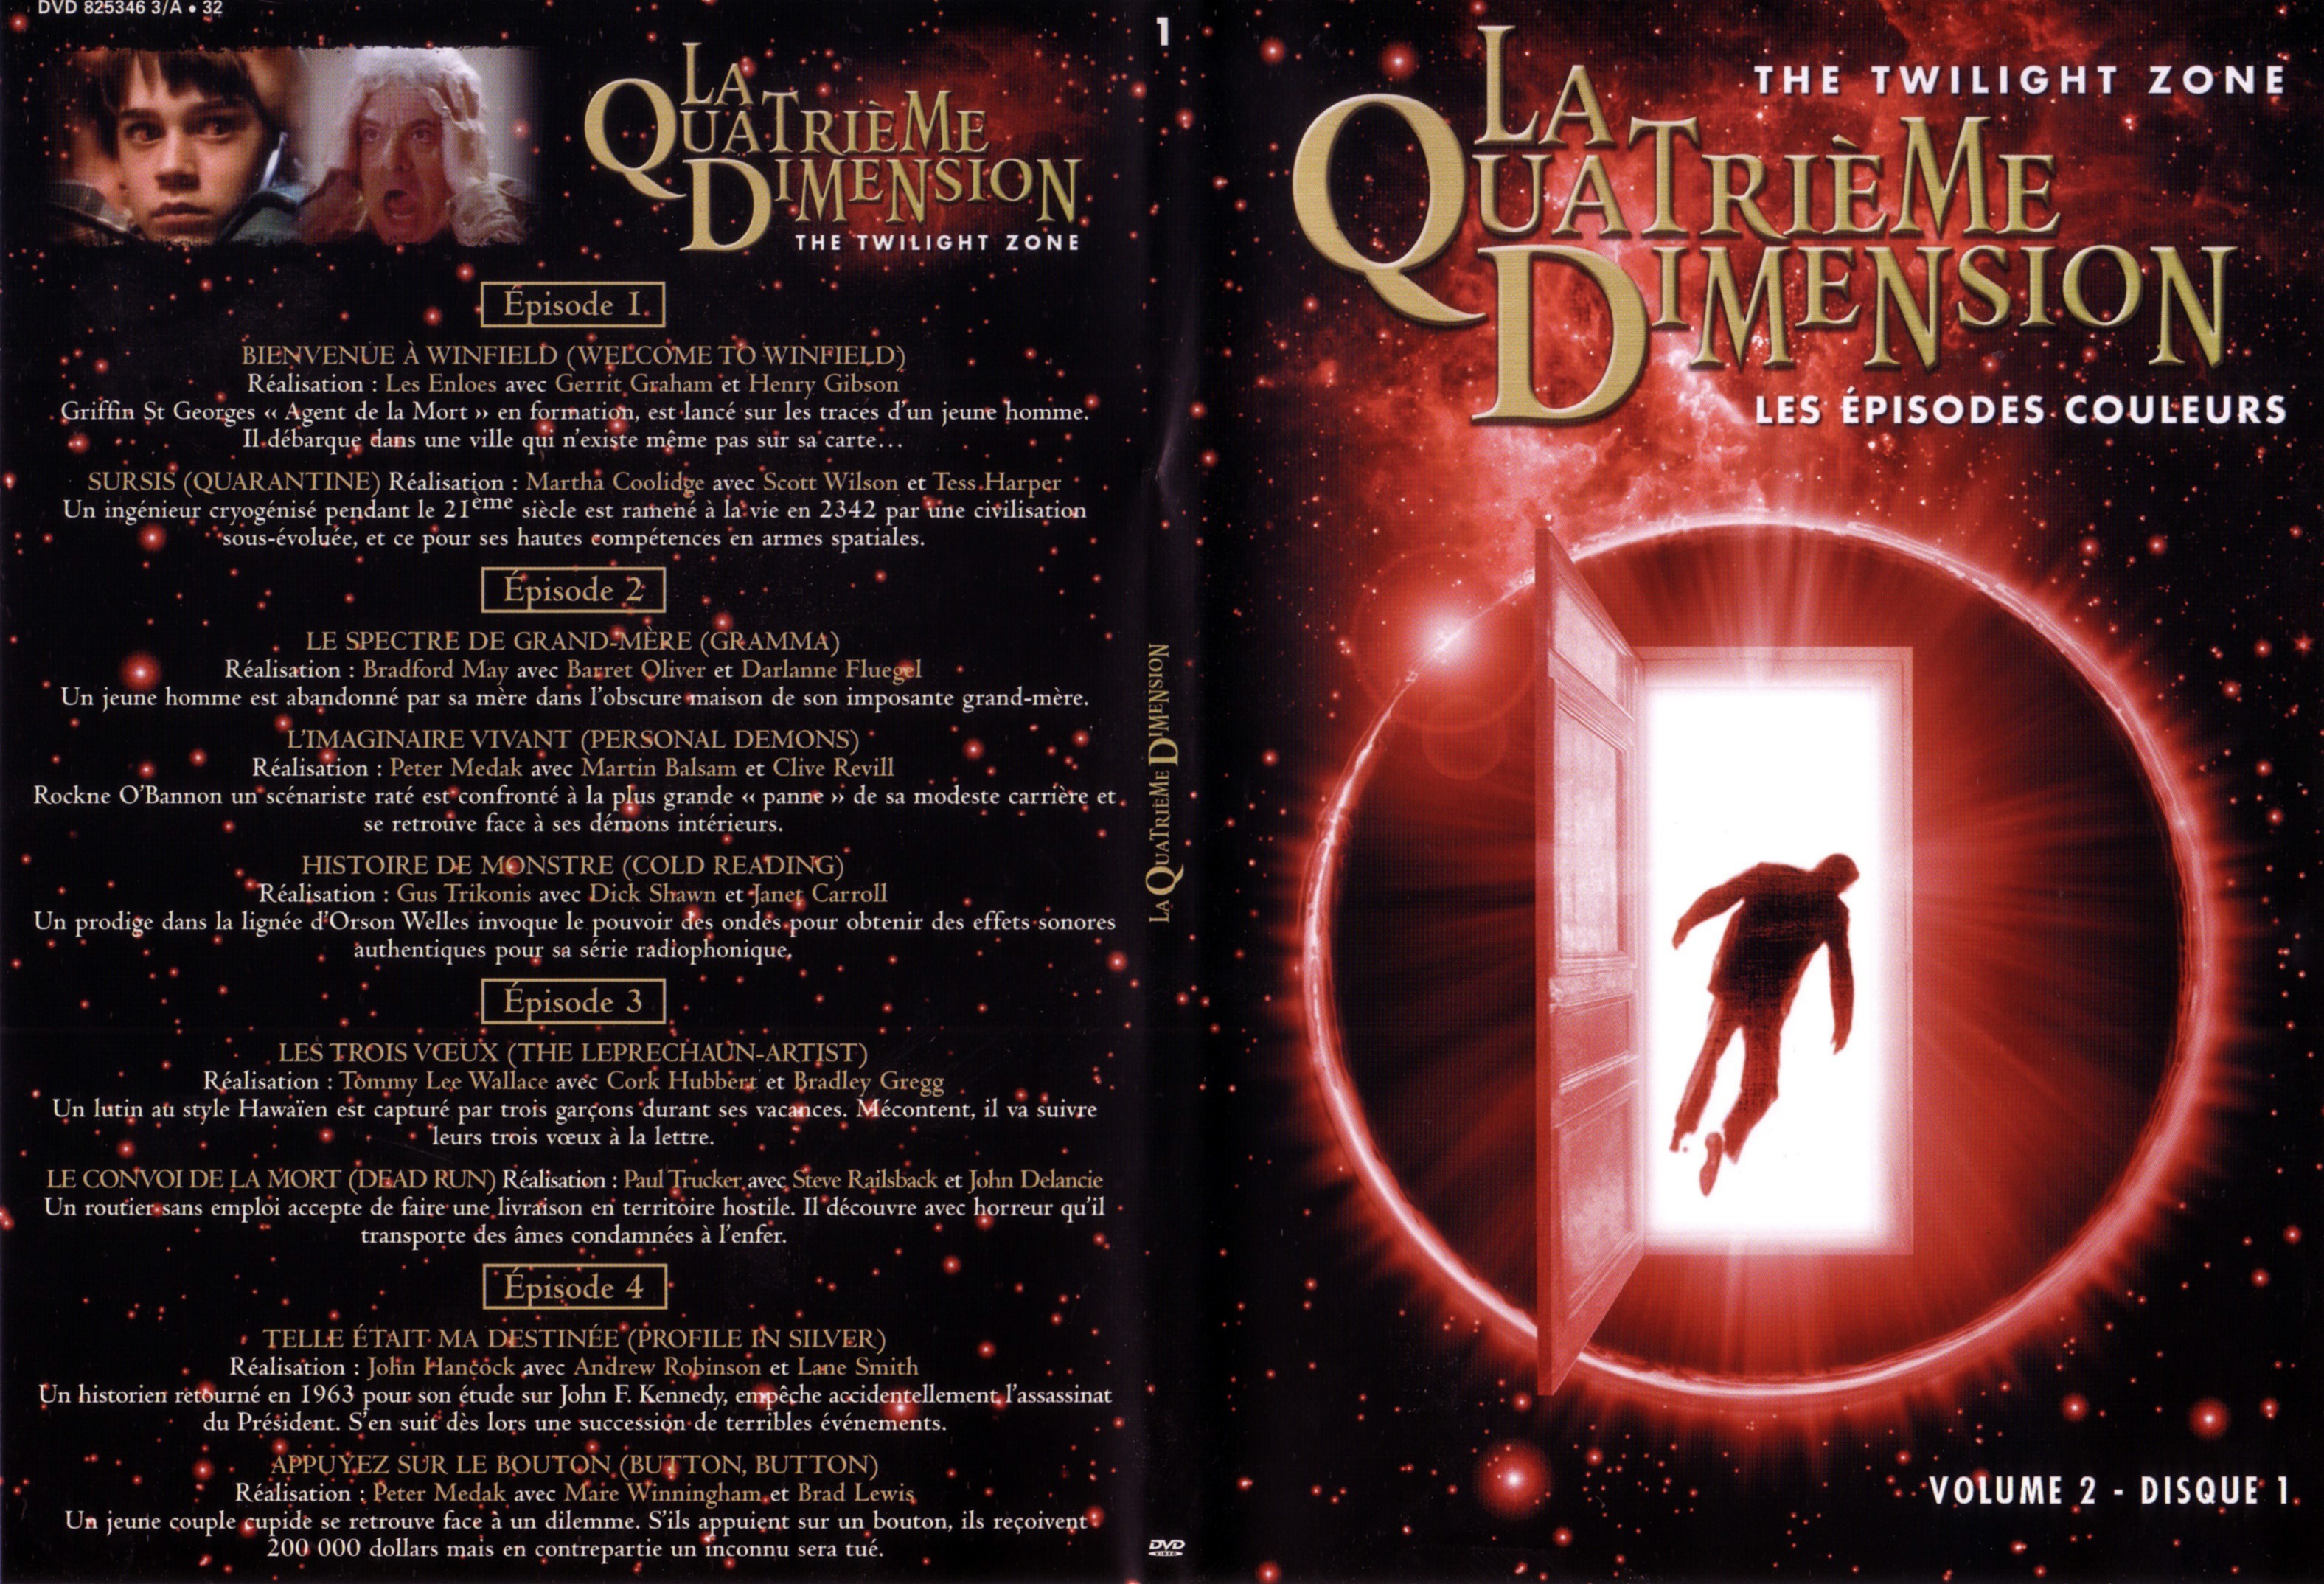 Jaquette DVD La quatrime dimension - Episodes couleurs vol 2 DVD 1